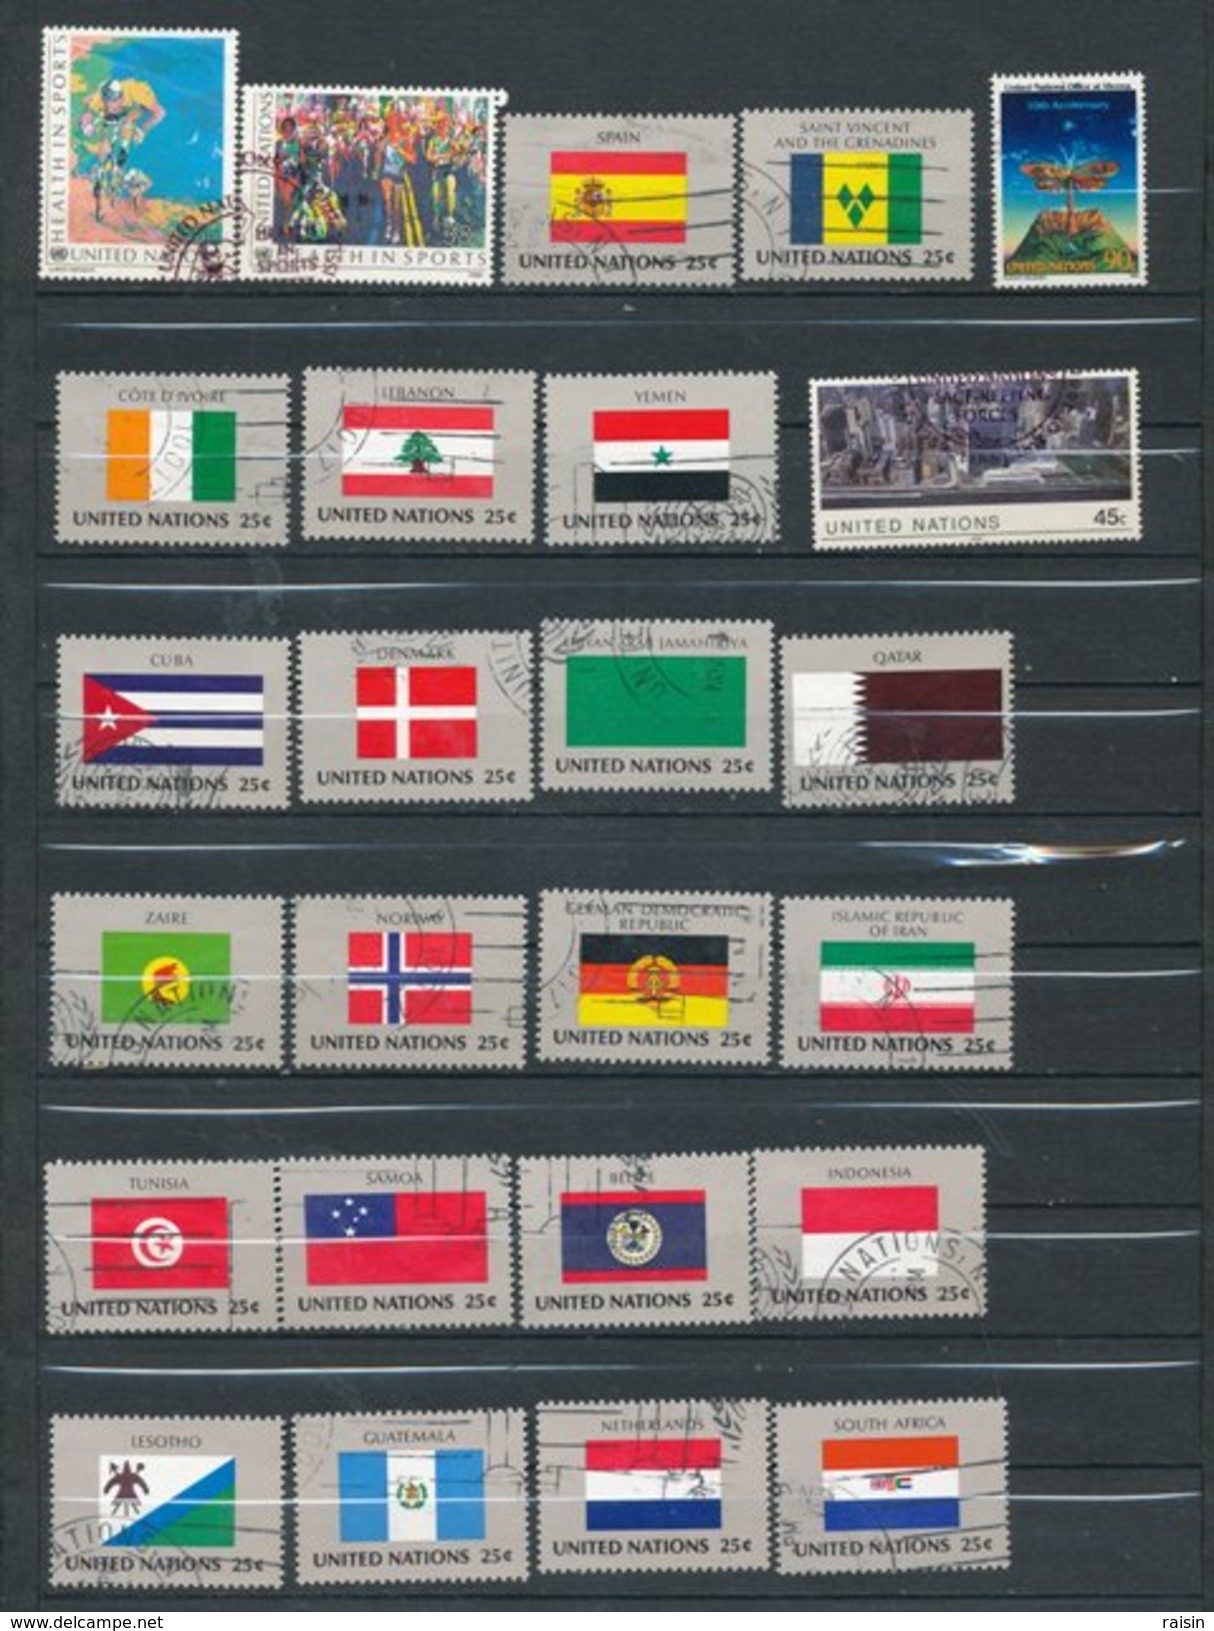 ONU New York Petite collection lot de plus de 600 timbres différents